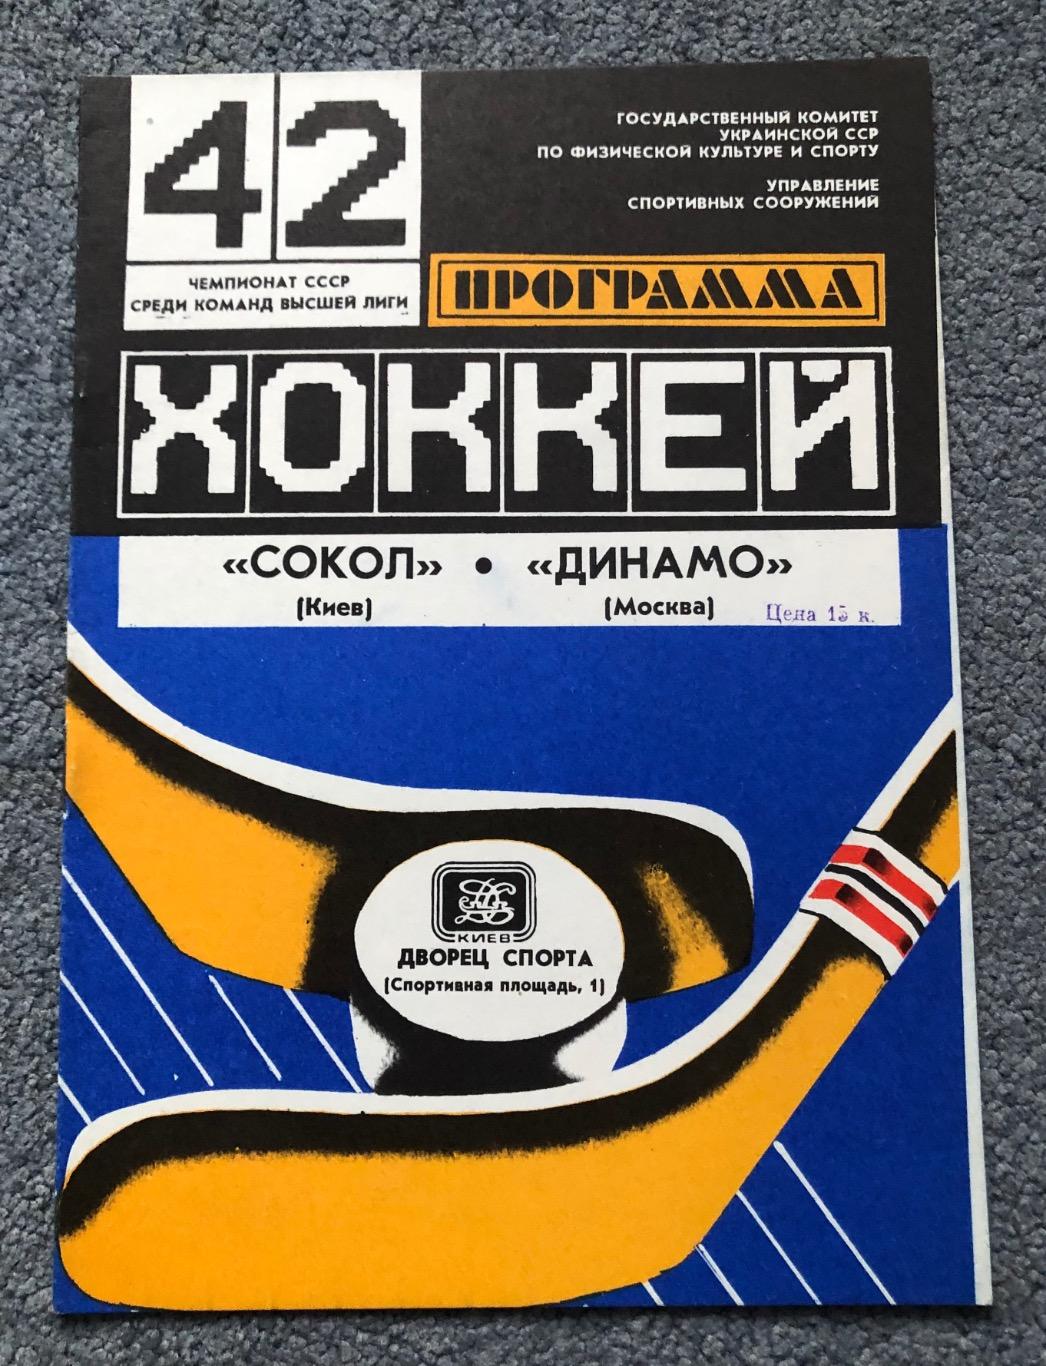 Сокол Киев - Динамо Москва, 20.11.1987